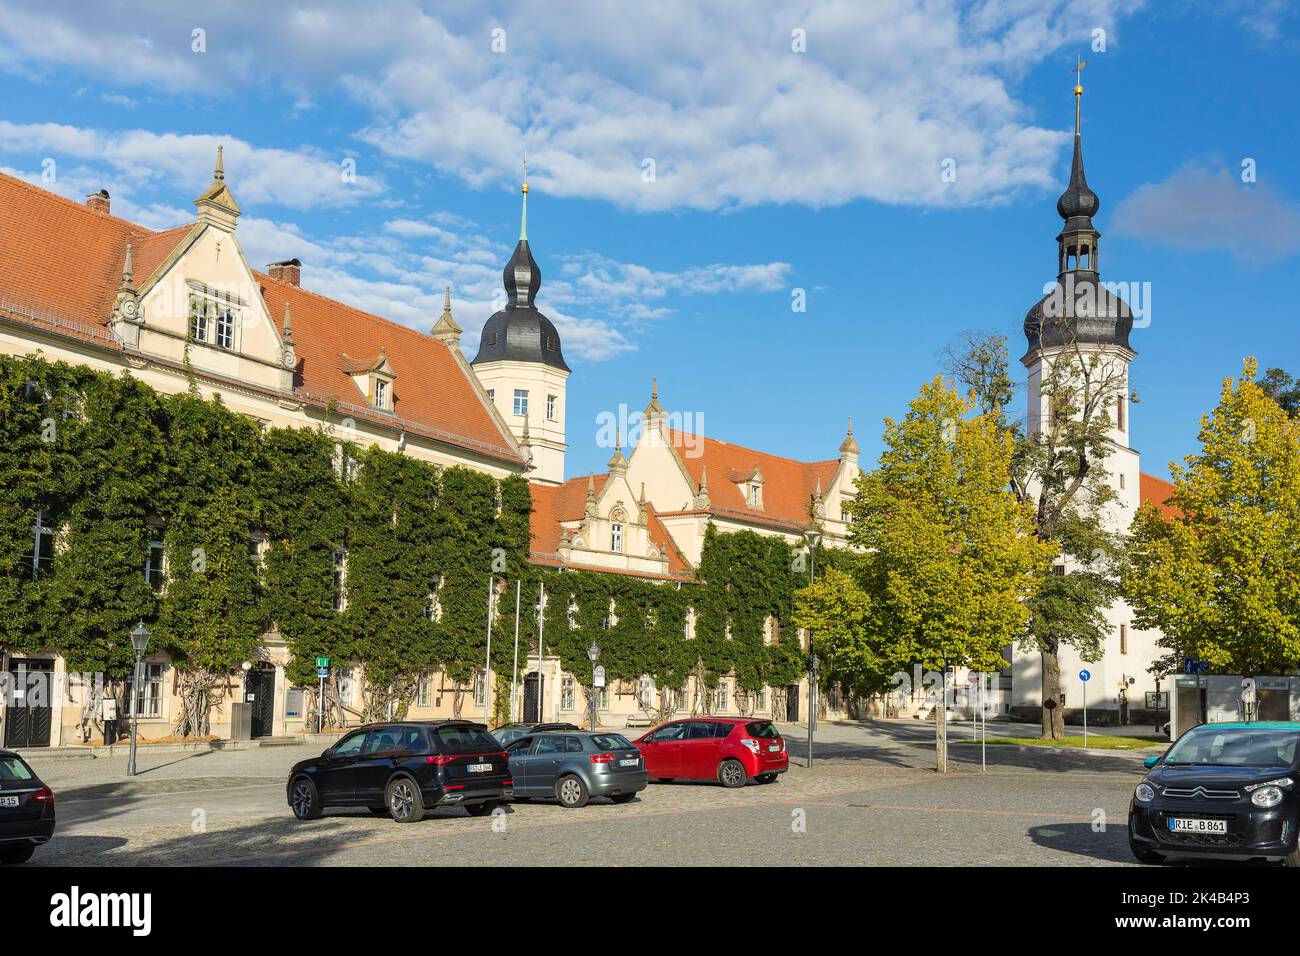 Rathaus und Klosterkirche, Riesa, Sachsen, Deutschland Stockfoto